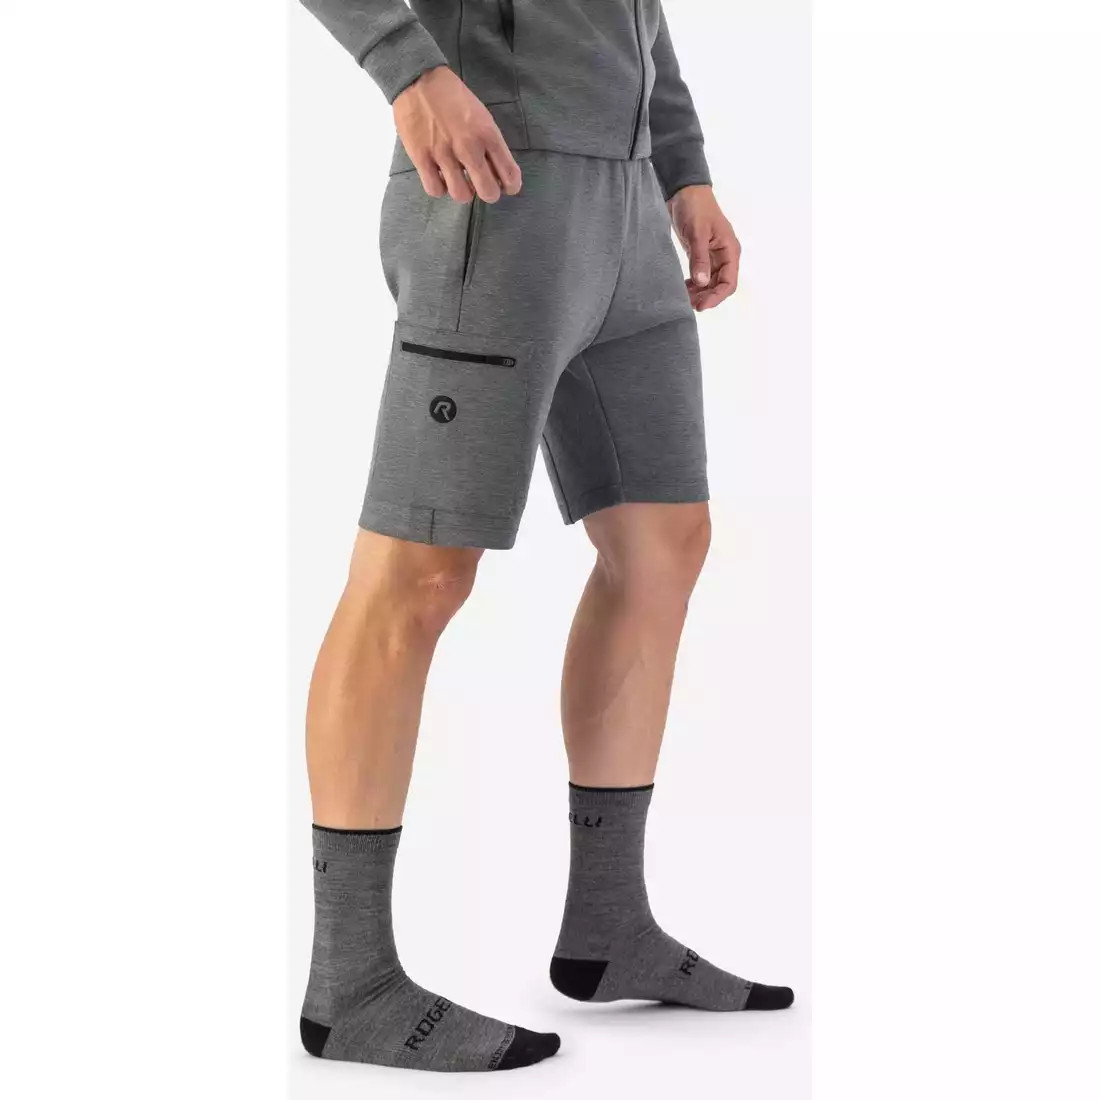 Rogelli TRAINING II men's running shorts, grey